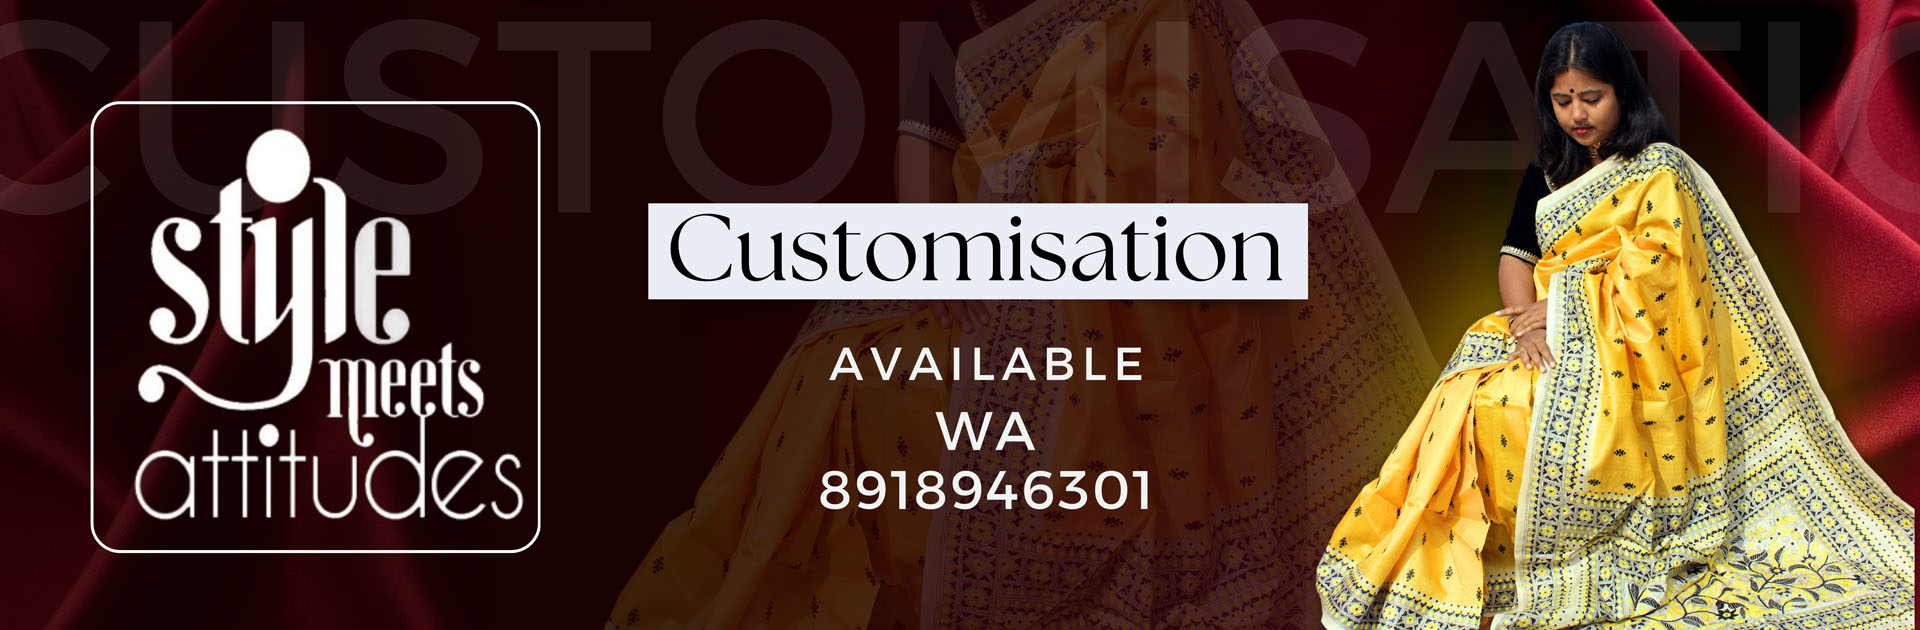 Customisation available - 8